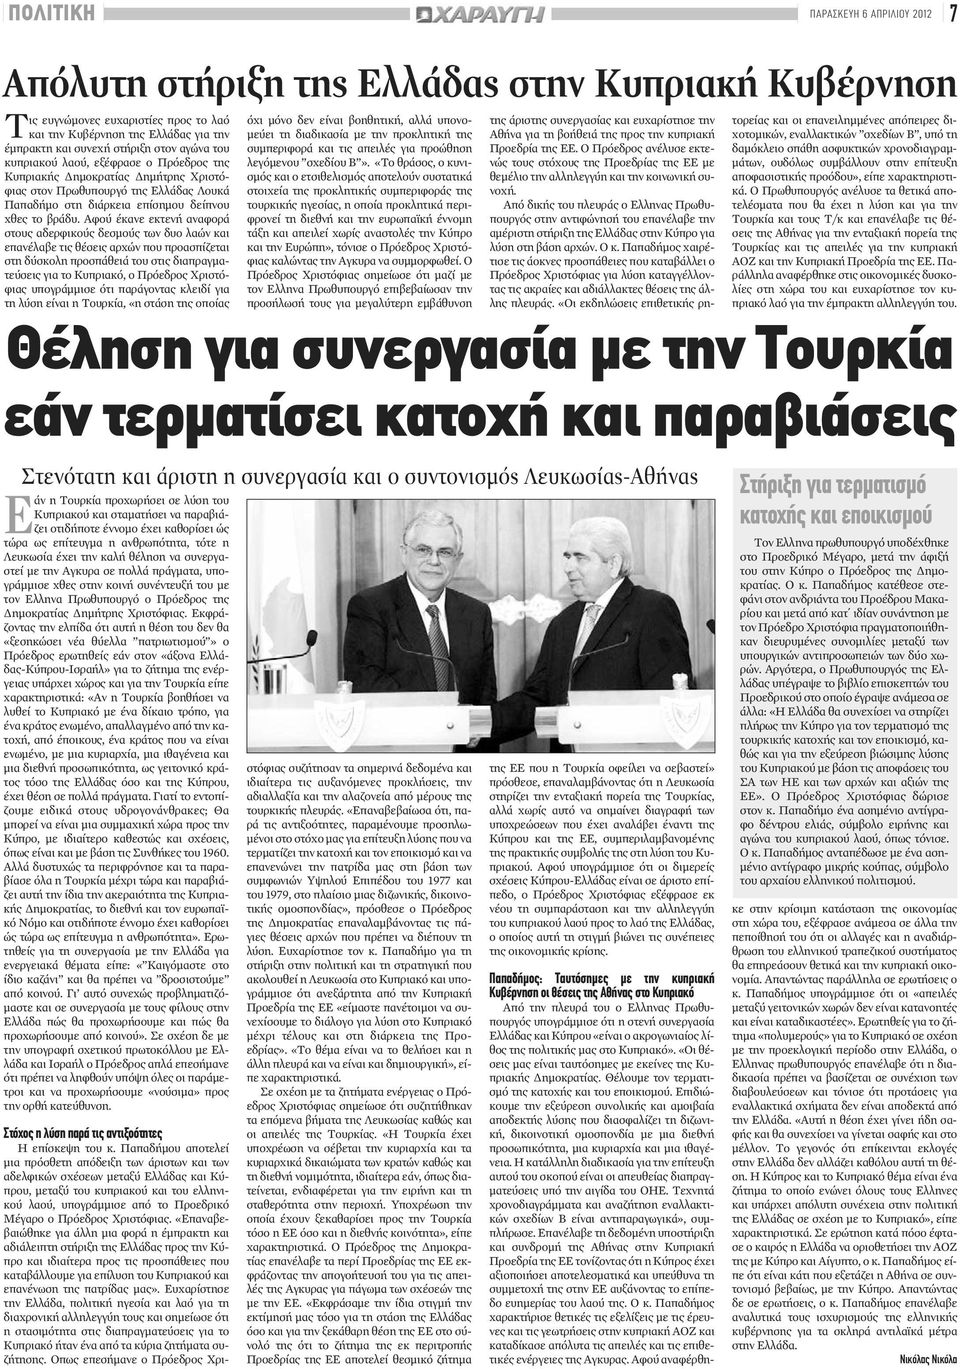 Αφού έκανε εκτενή αναφορά στους αδερφικούς δεσμούς των δυο λαών και επανέλαβε τις θέσεις αρχών που προασπίζεται στη δύσκολη προσπάθειά του στις διαπραγματεύσεις για το Κυπριακό, ο Πρόεδρος Χριστόφιας